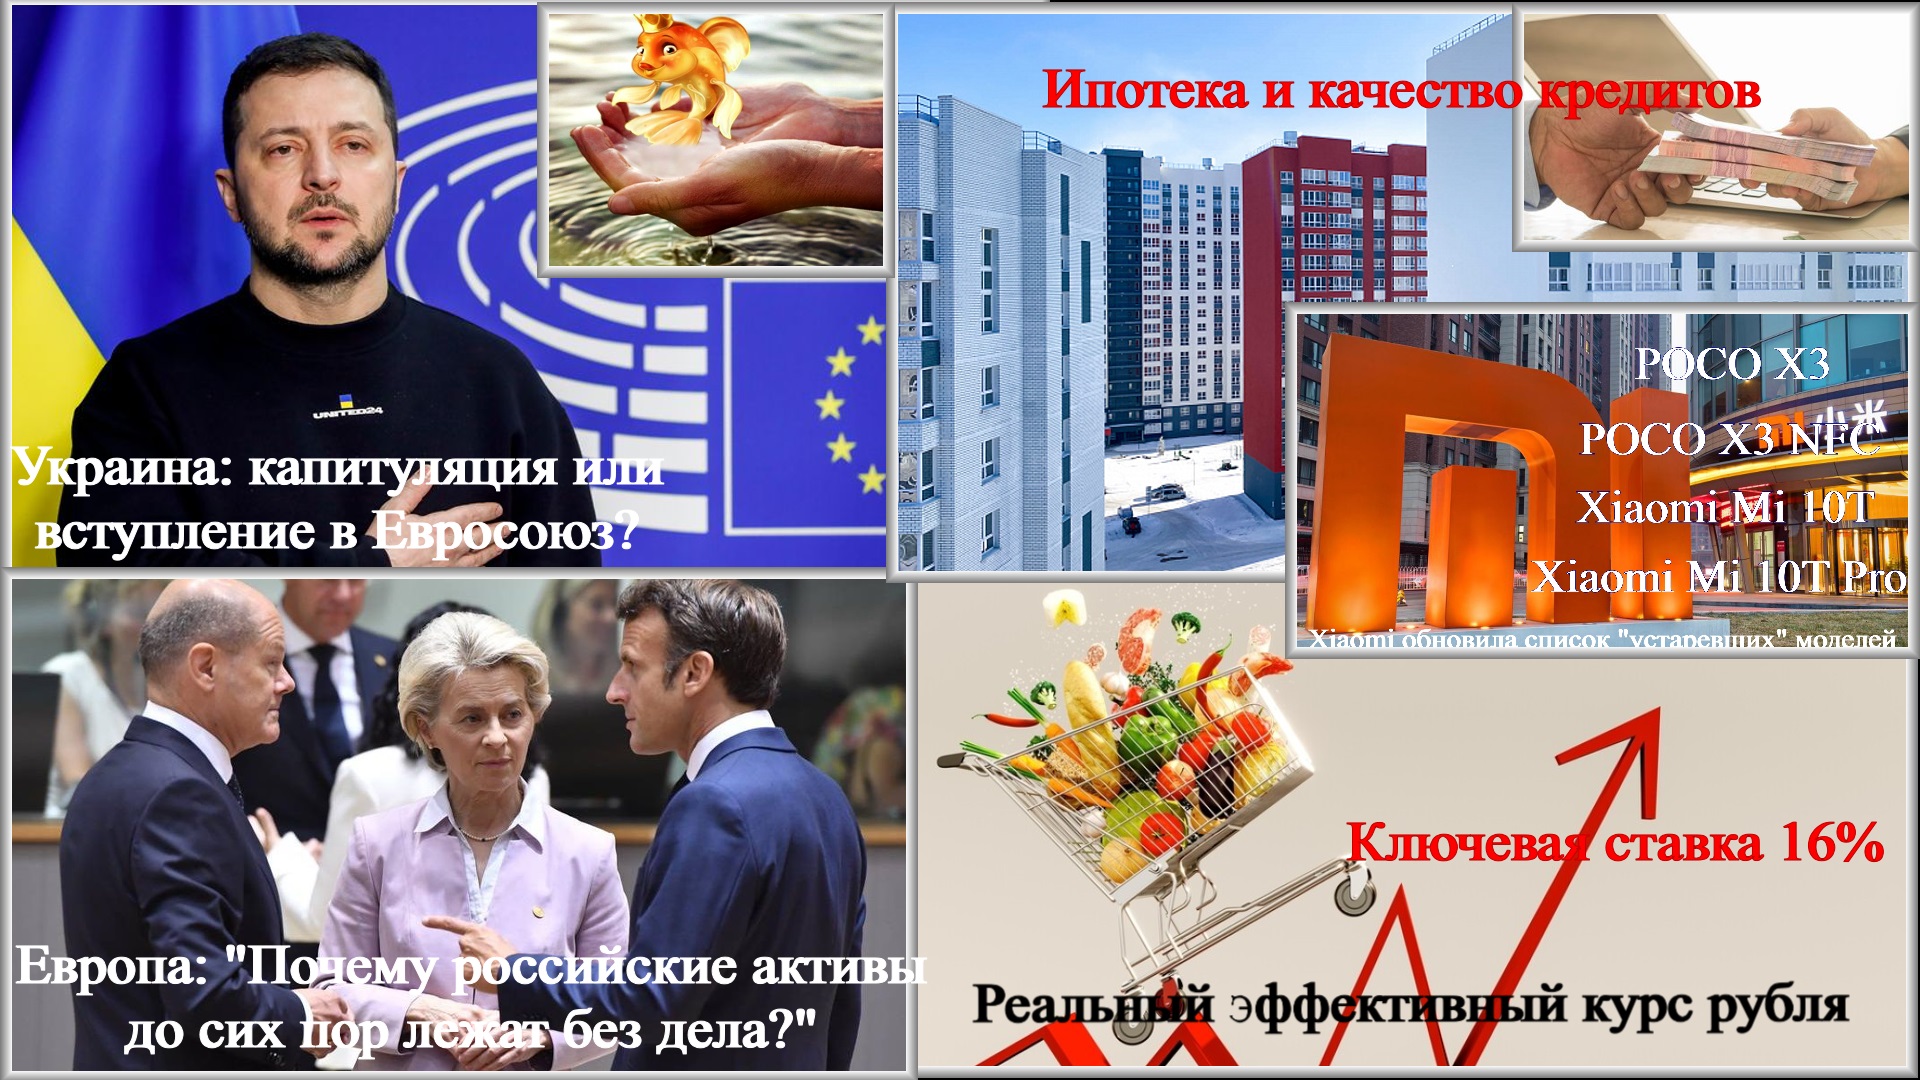 Новости 16 - 19.12.23. Украина: капитуляция или вступление в Евросоюз?